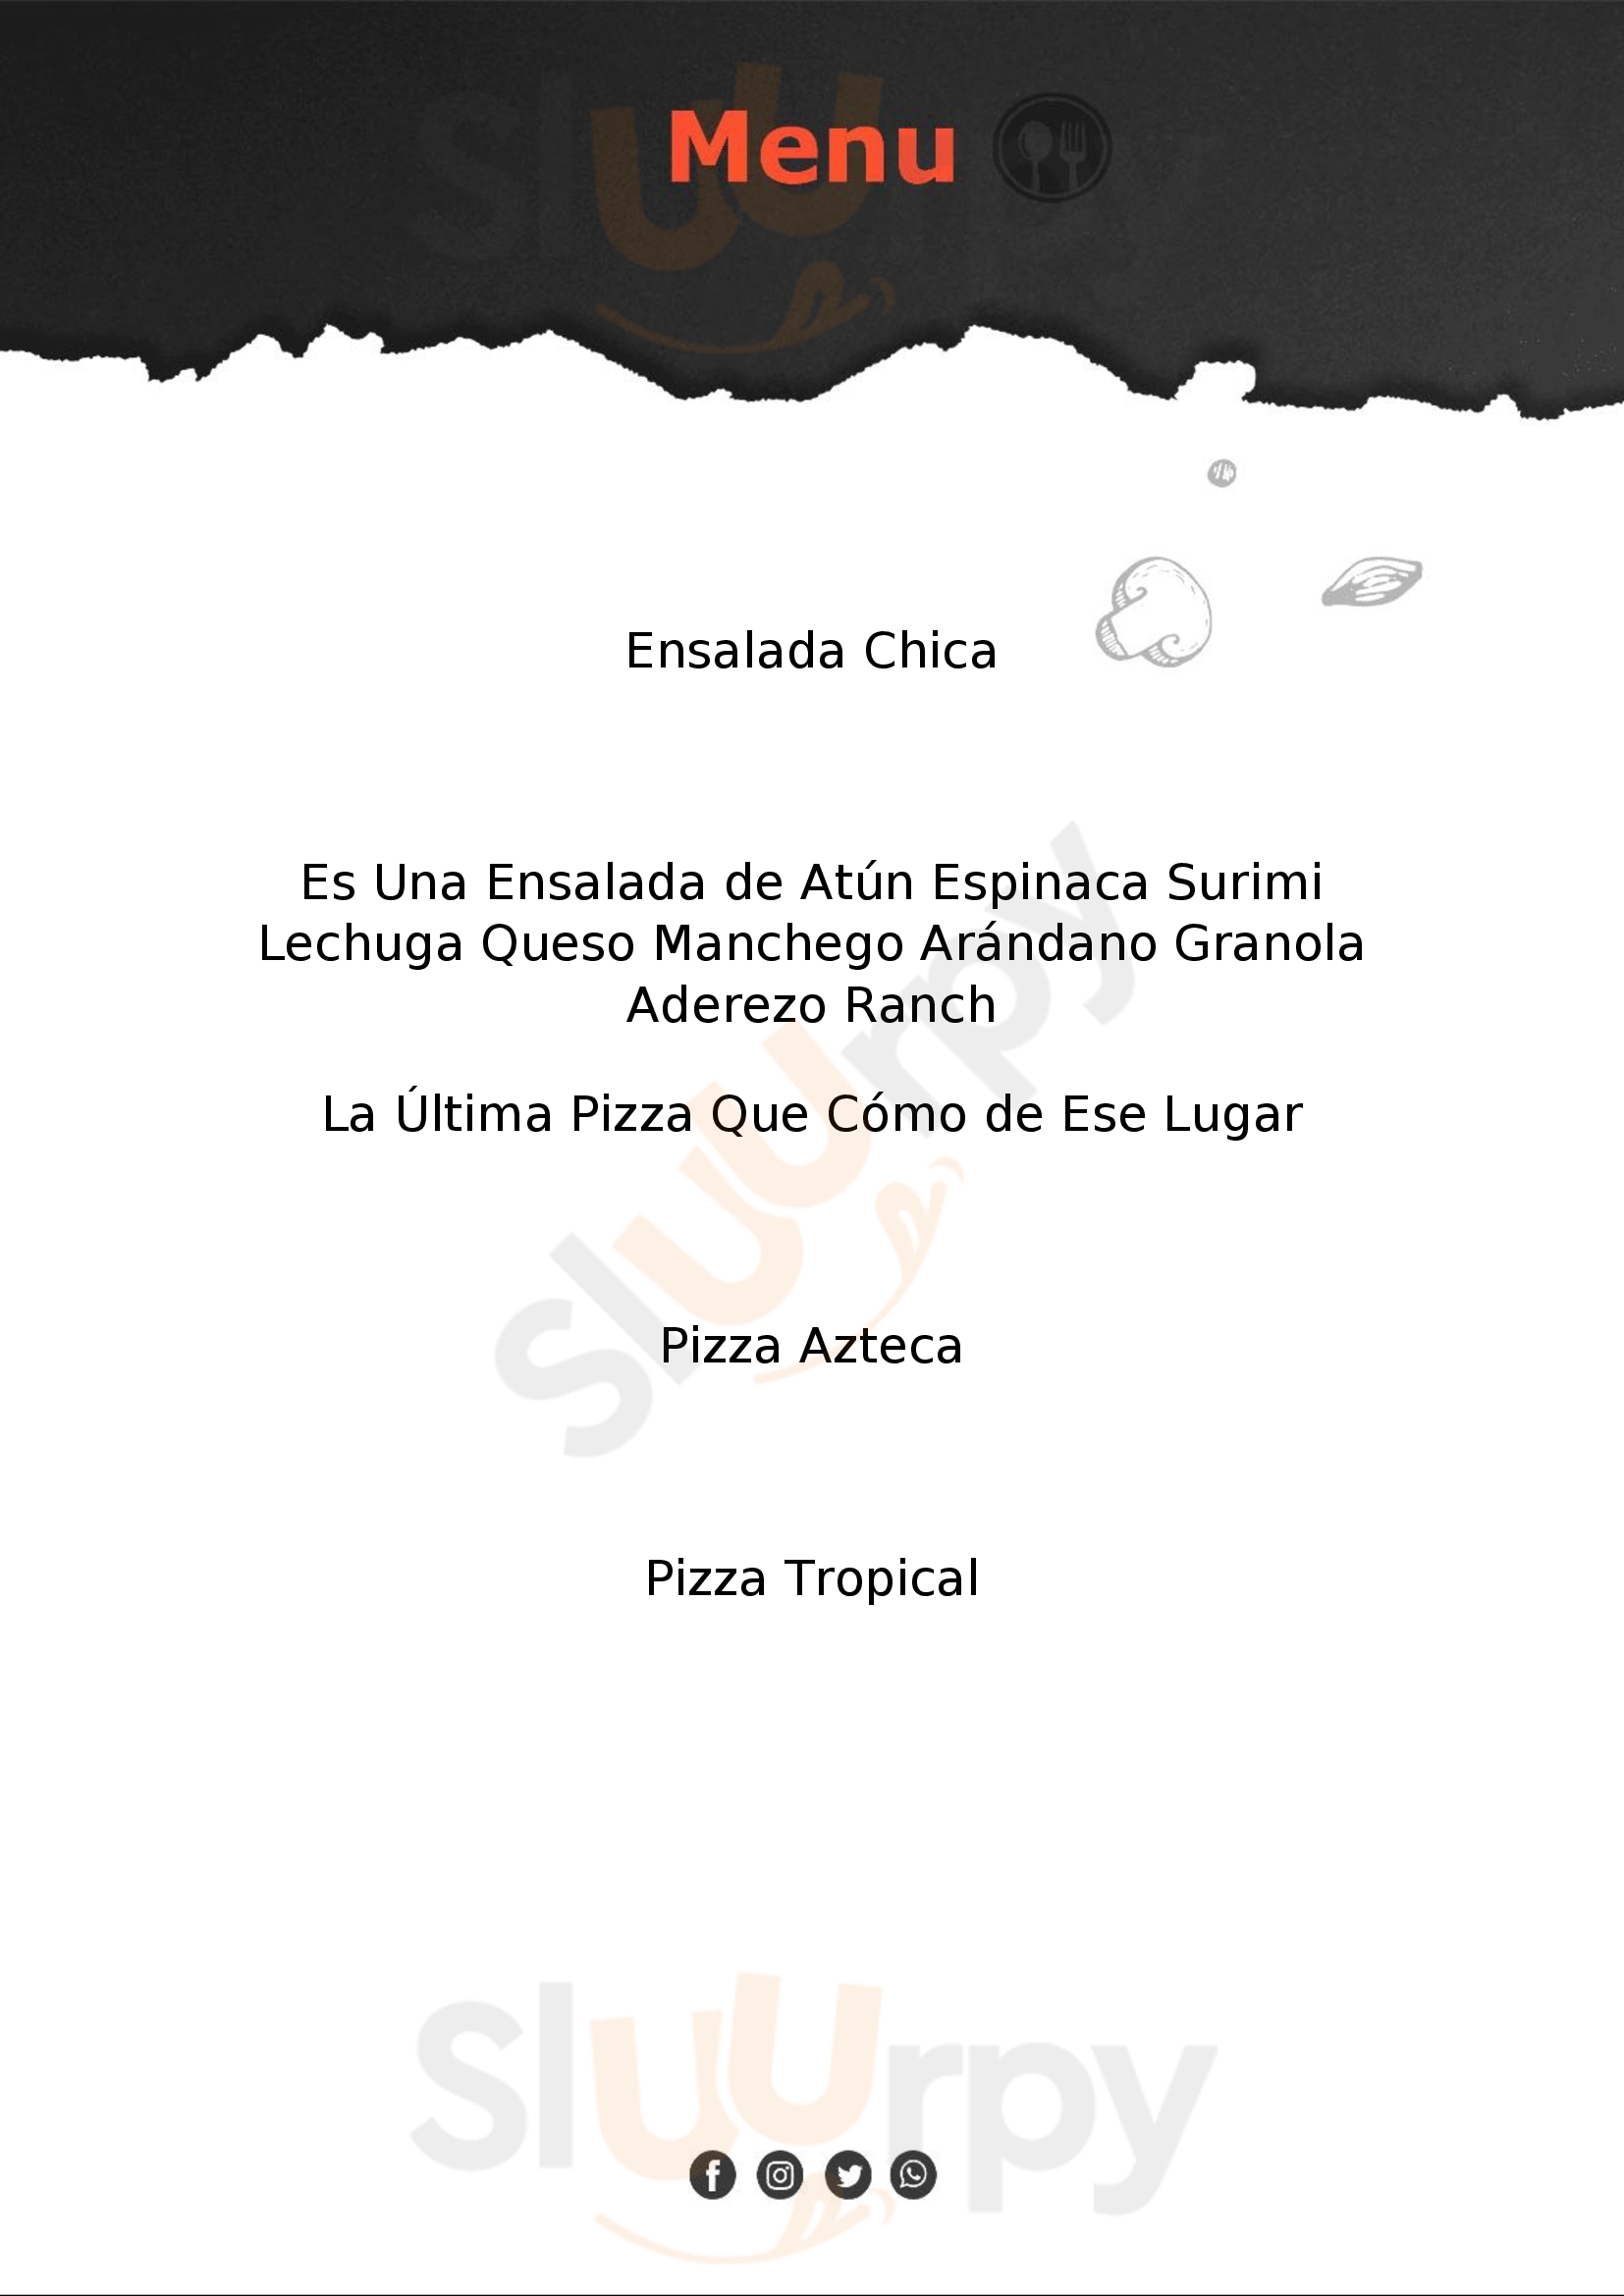 Pizzas Beny Pachuca Menu - 1